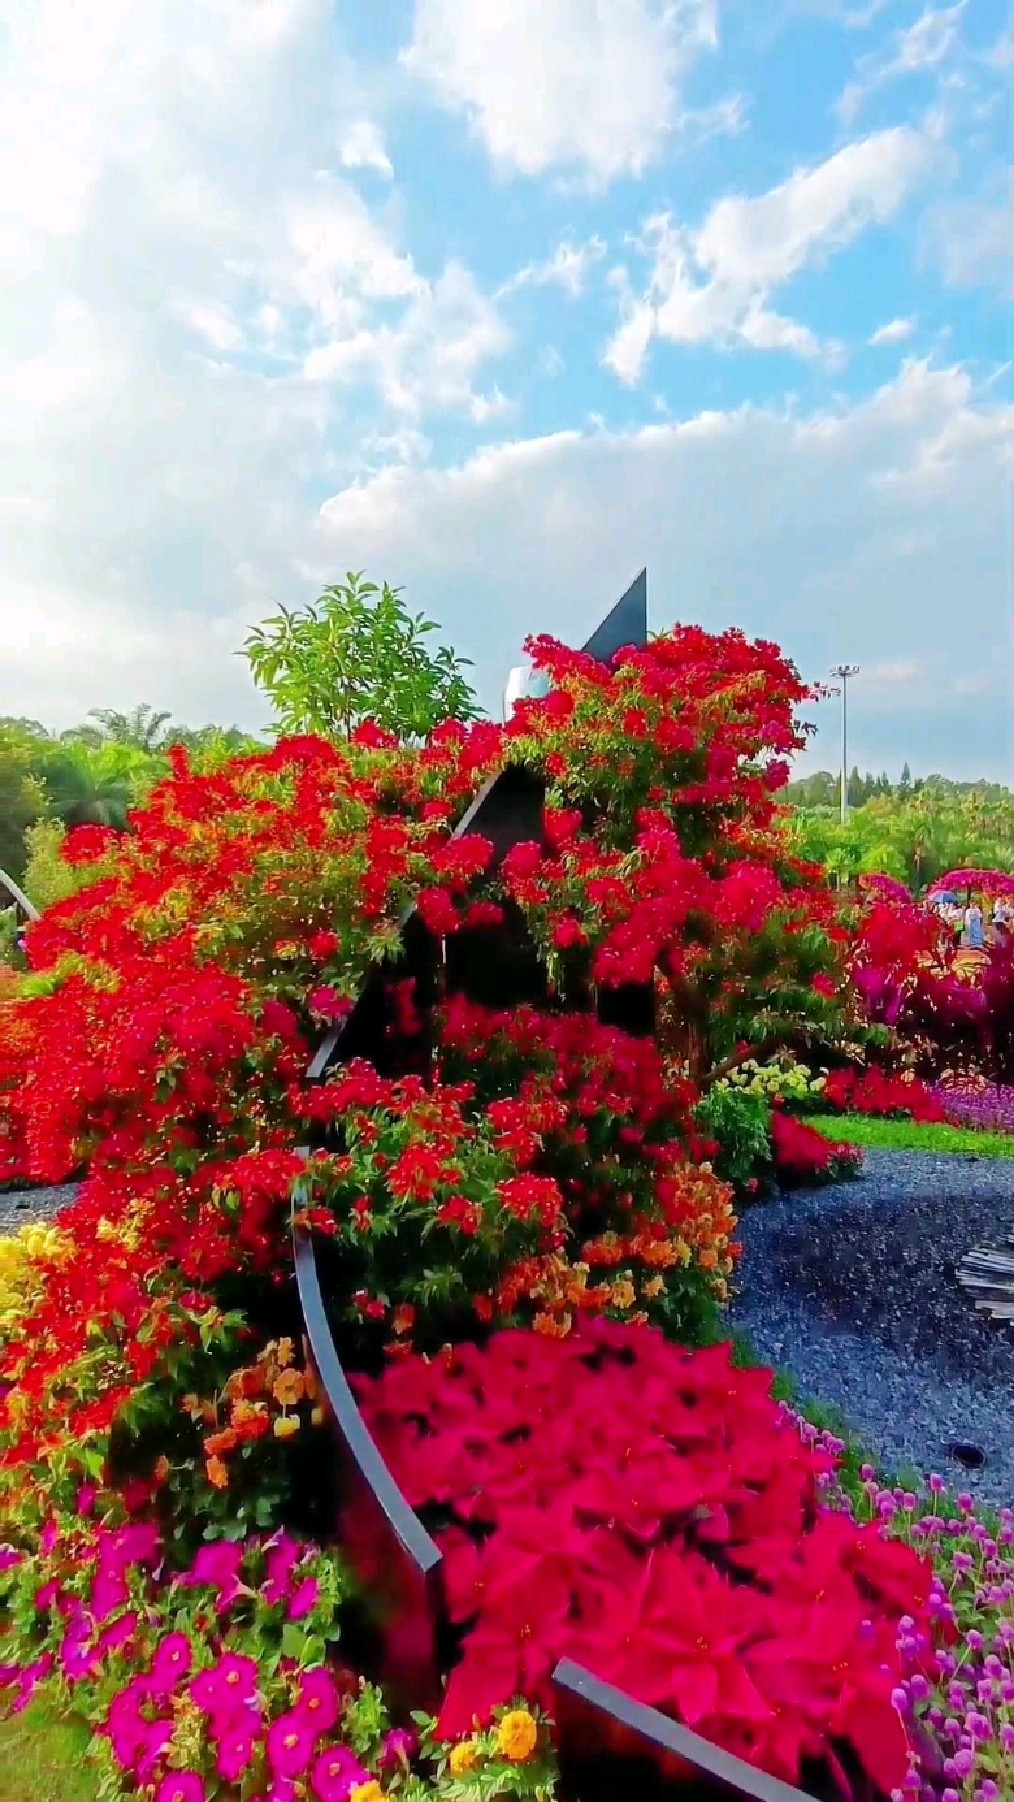 深圳莲花山公园簕杜鹃花展随拍,今年的簕杜鹃花展现了最美丽的容颜